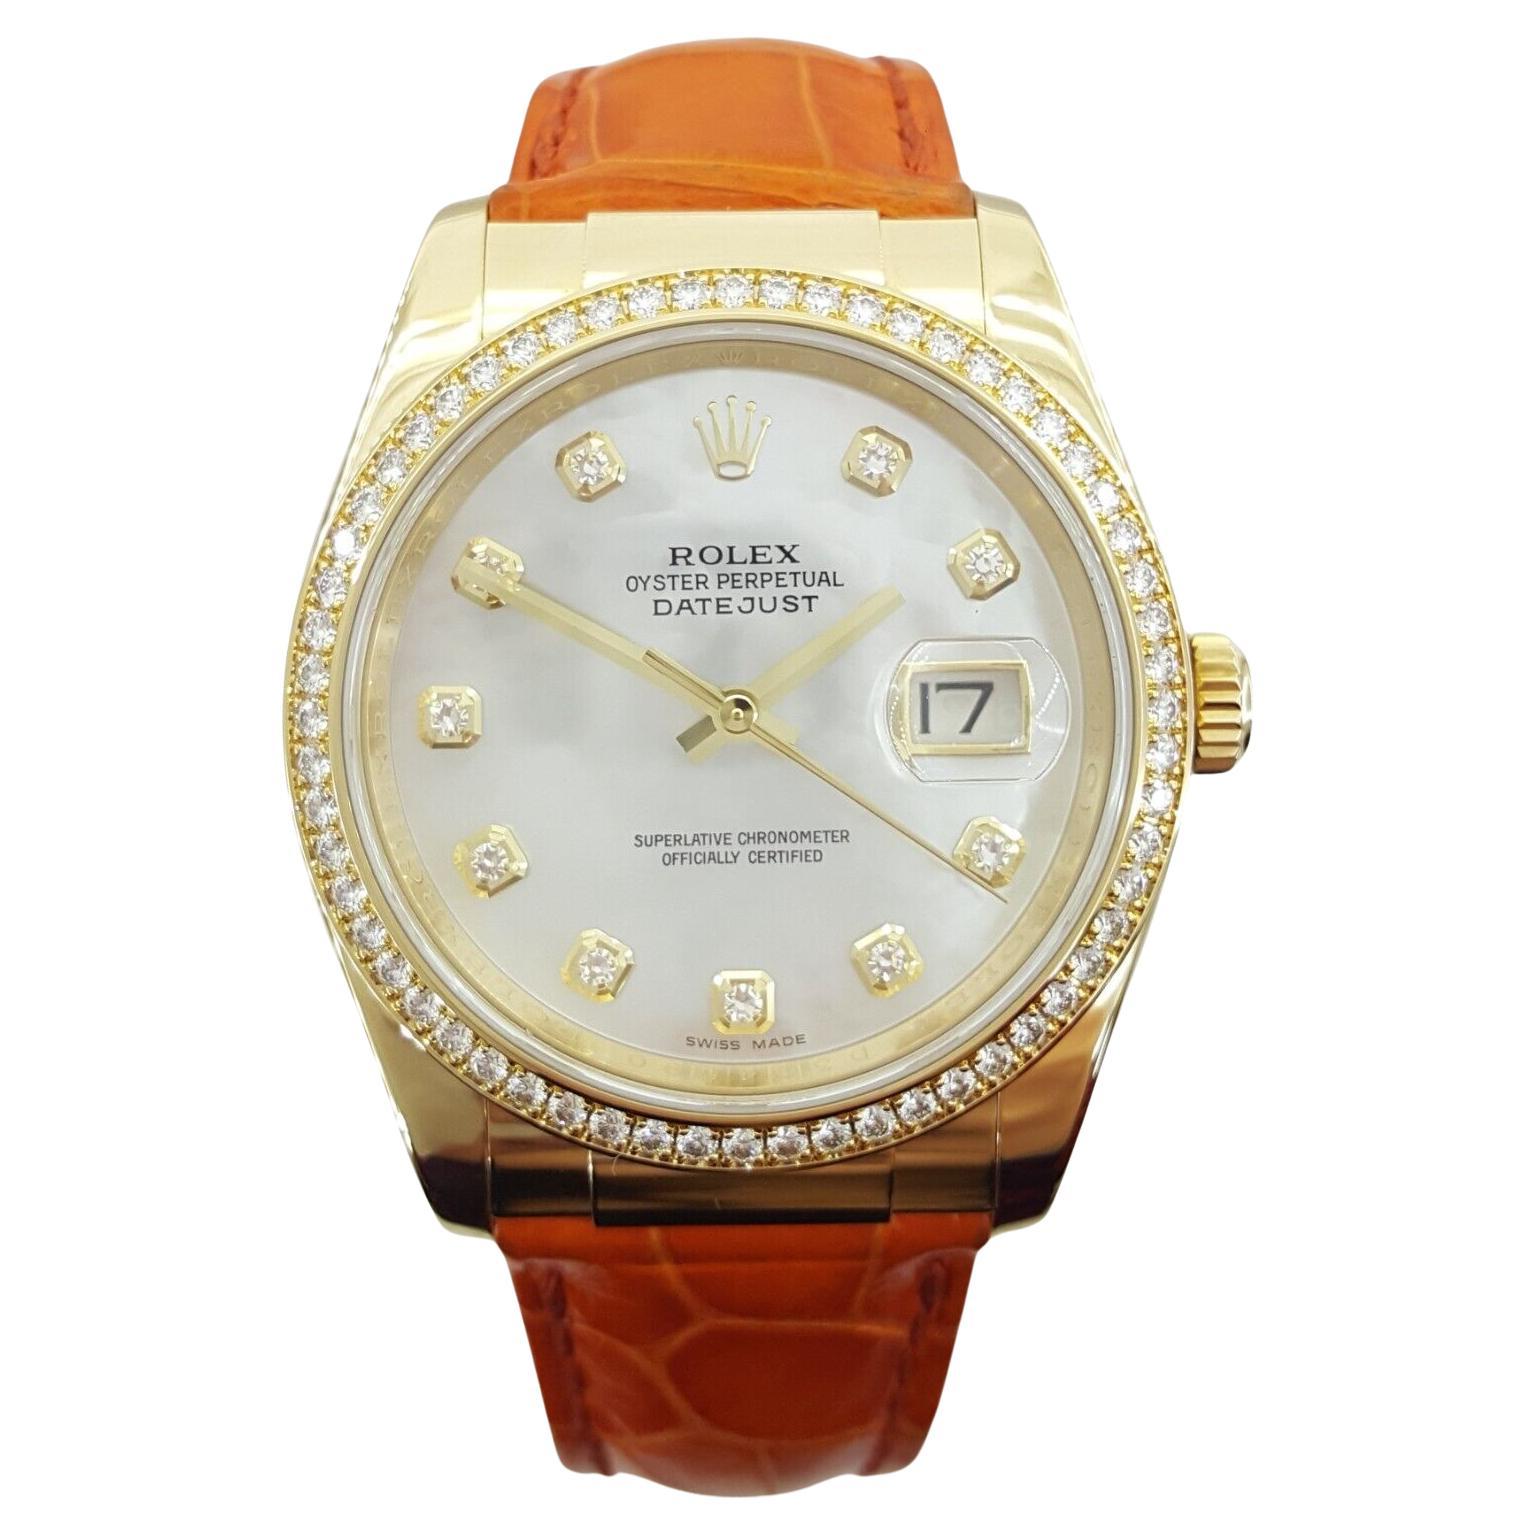 Sie kaufen eine authentische Rolex Lady DateJust 116188, eine 36mm Uhr aus 18K Gelbgold, mit einem Fabrik Perlmutt Diamant-Zifferblatt und einer Fabrik Diamant-Lünette.

Diese Uhr ist ein wahres Wunderwerk, ausgestattet mit einer verschraubten Krone